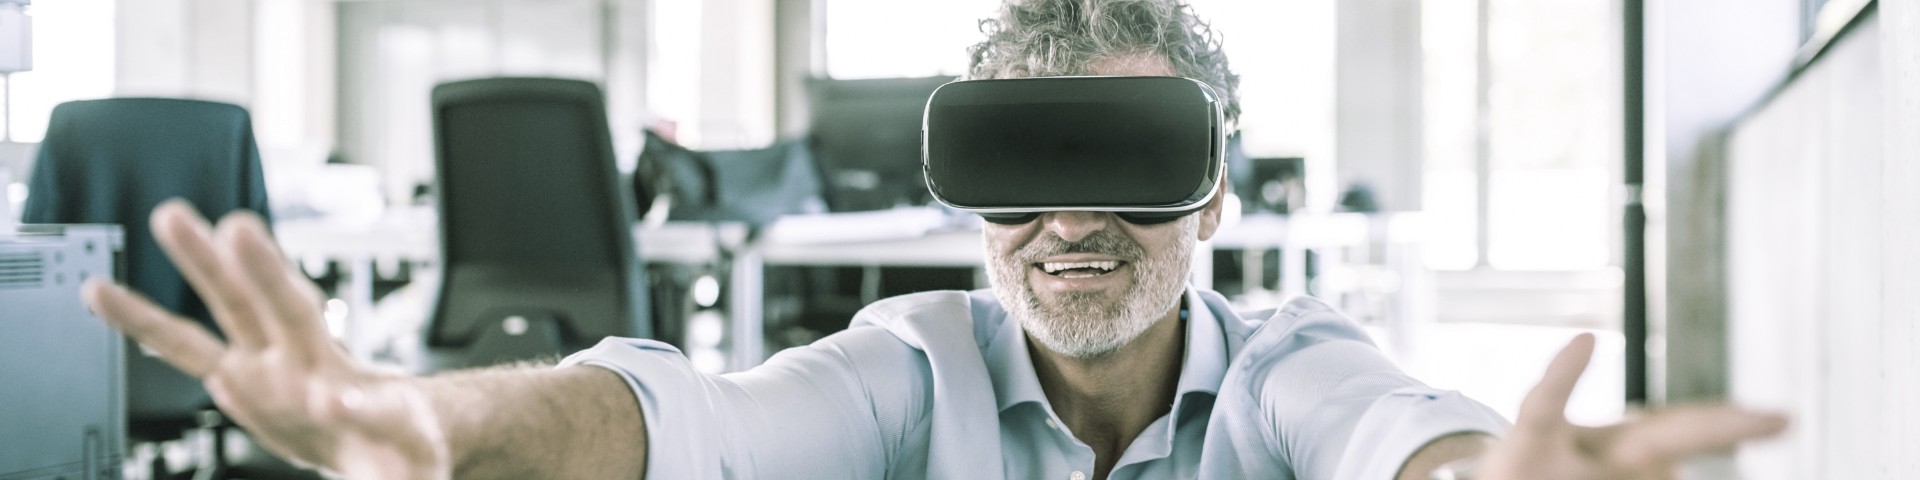 KPS-Blog, visiones del futuro, probar las gafas de realidad virtual